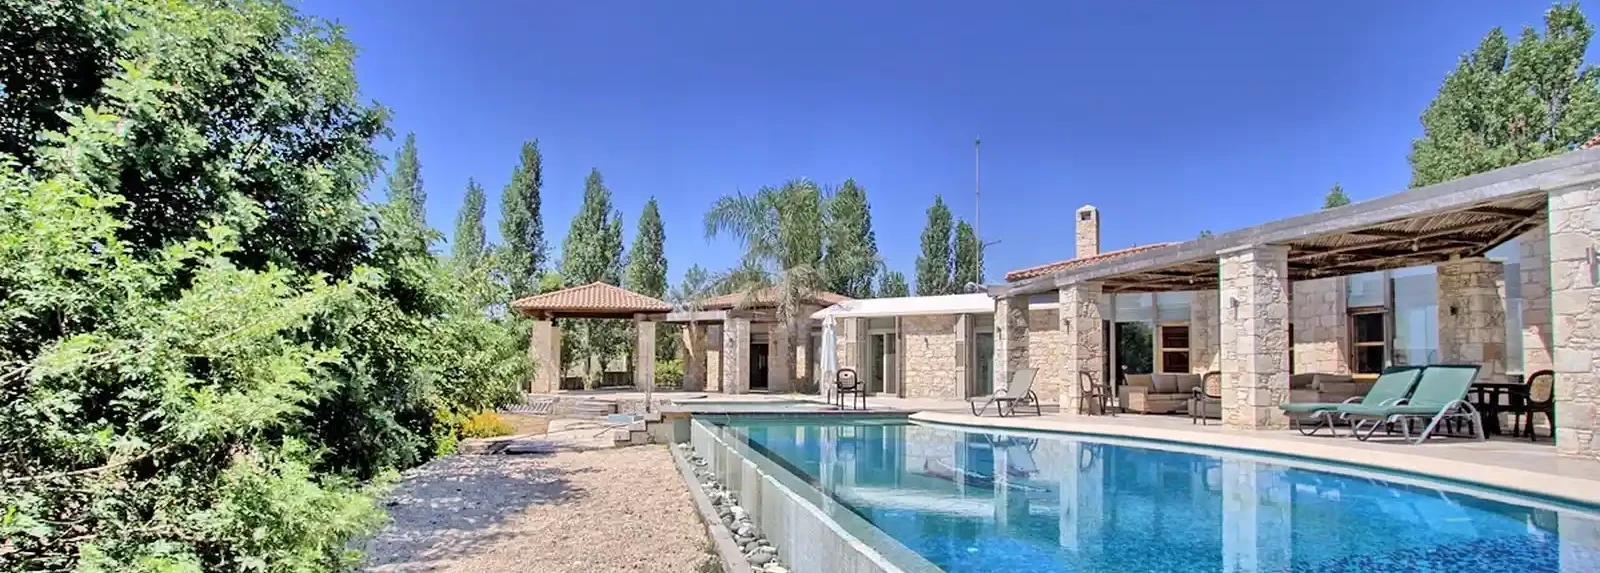 6-bedroom villa to rent €4.000, image 1